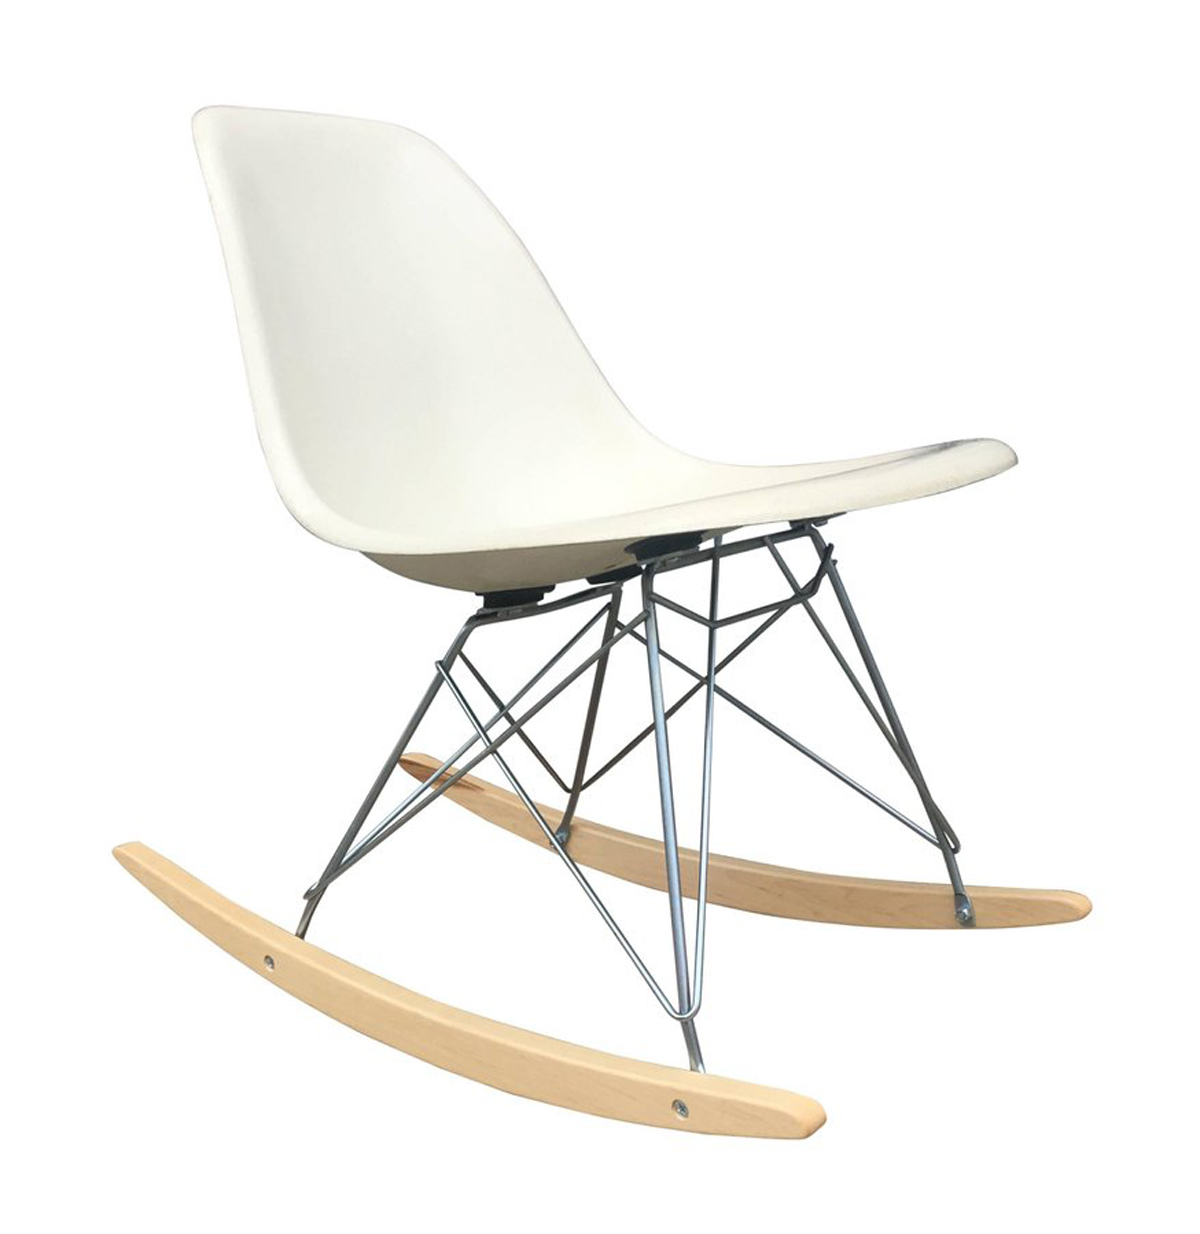 An Eames fiberglass rocking chair